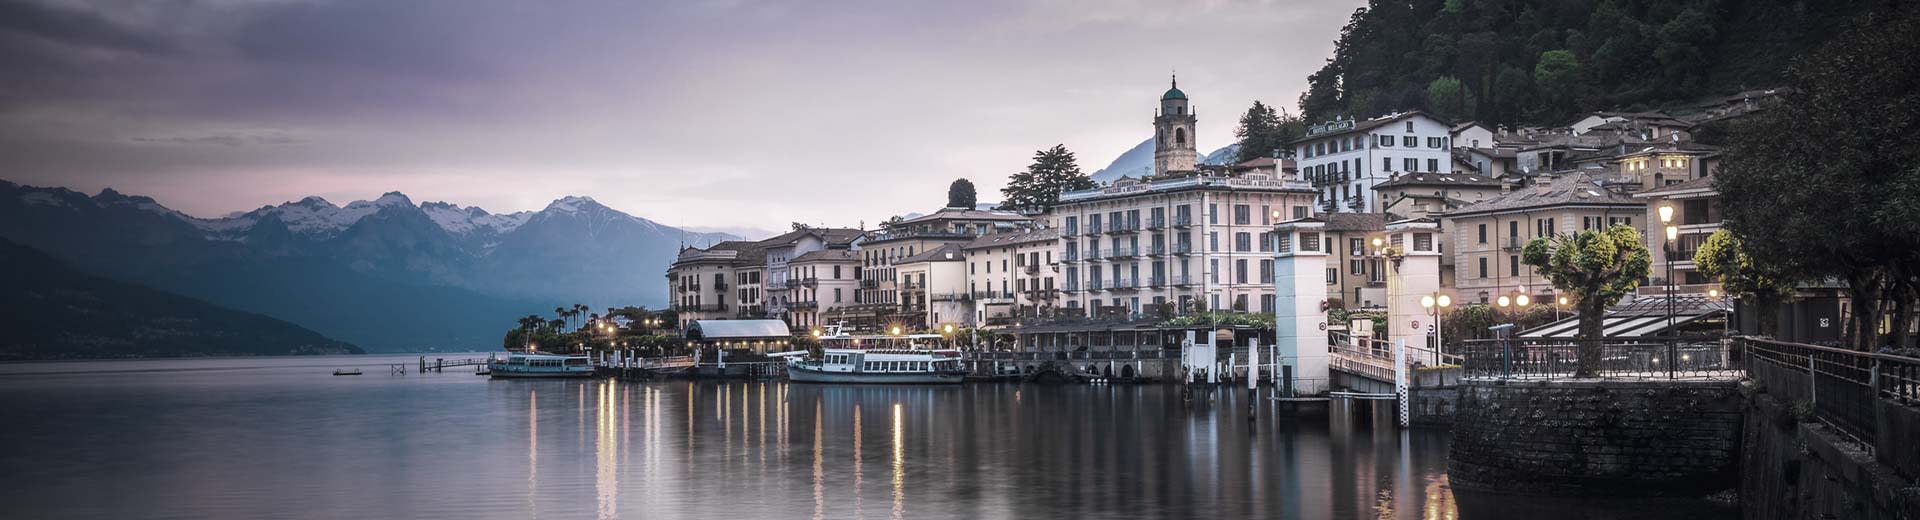 Le magnifique bâtiment de Como bordera le rivage du lac à moitié léger.